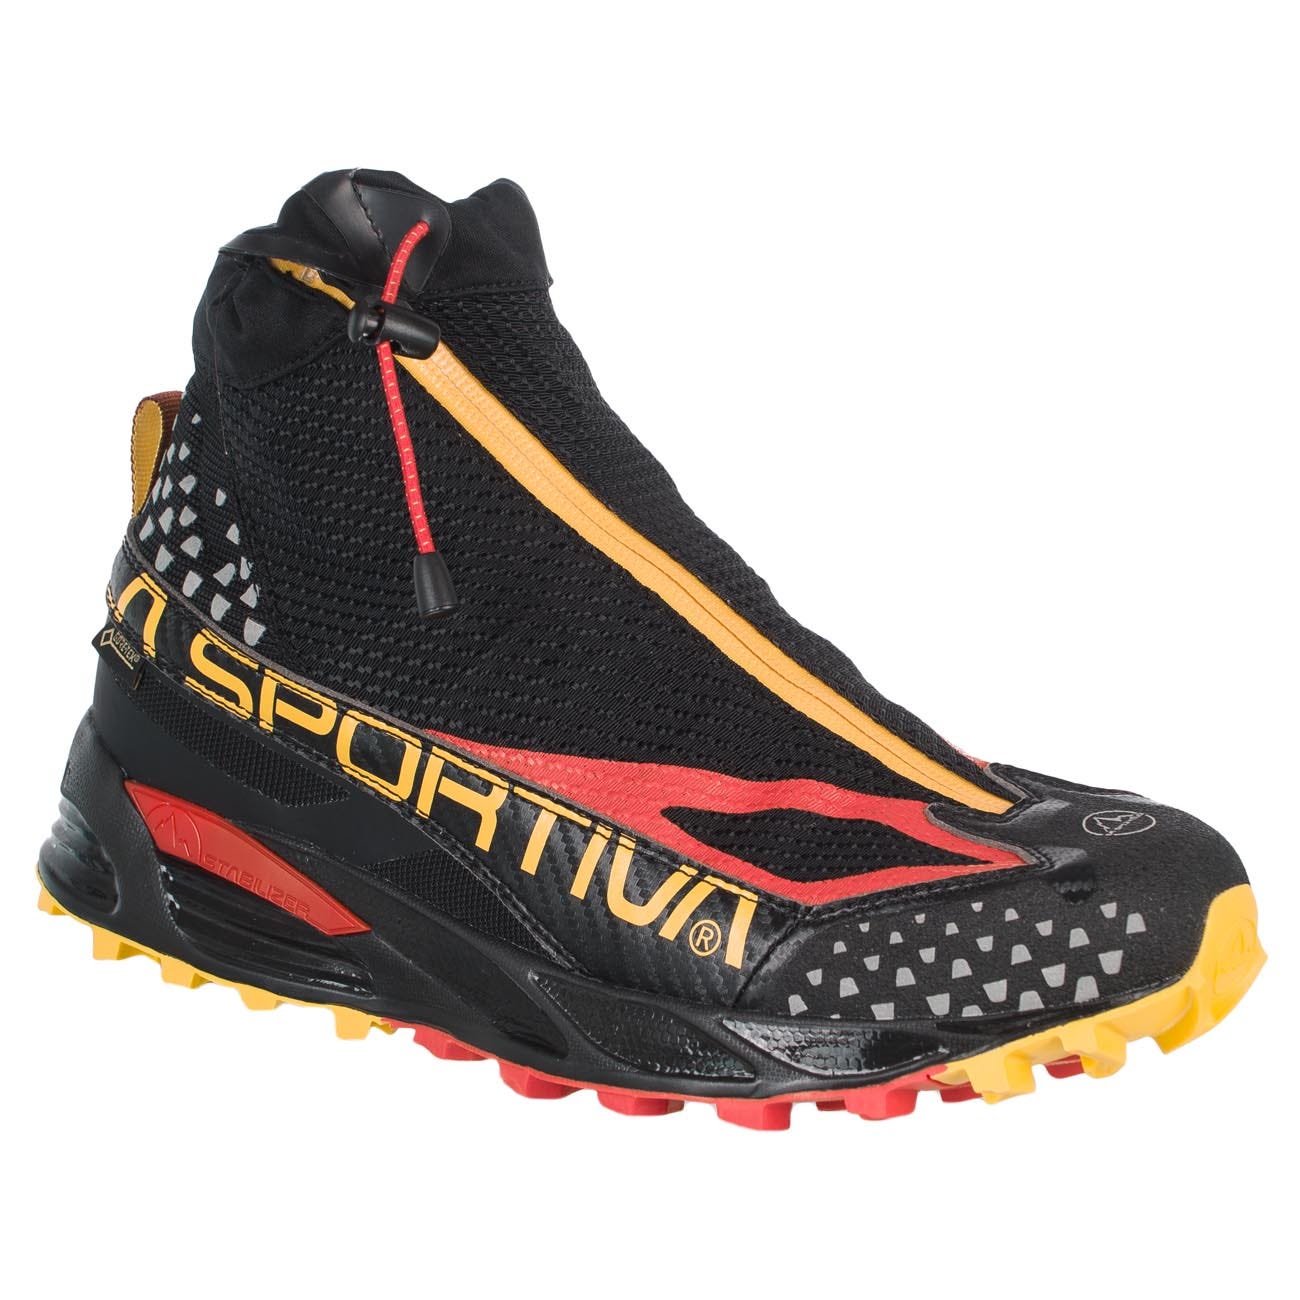 La Sportiva Crossover 2.0 GTX - Trail running shoes - Men's